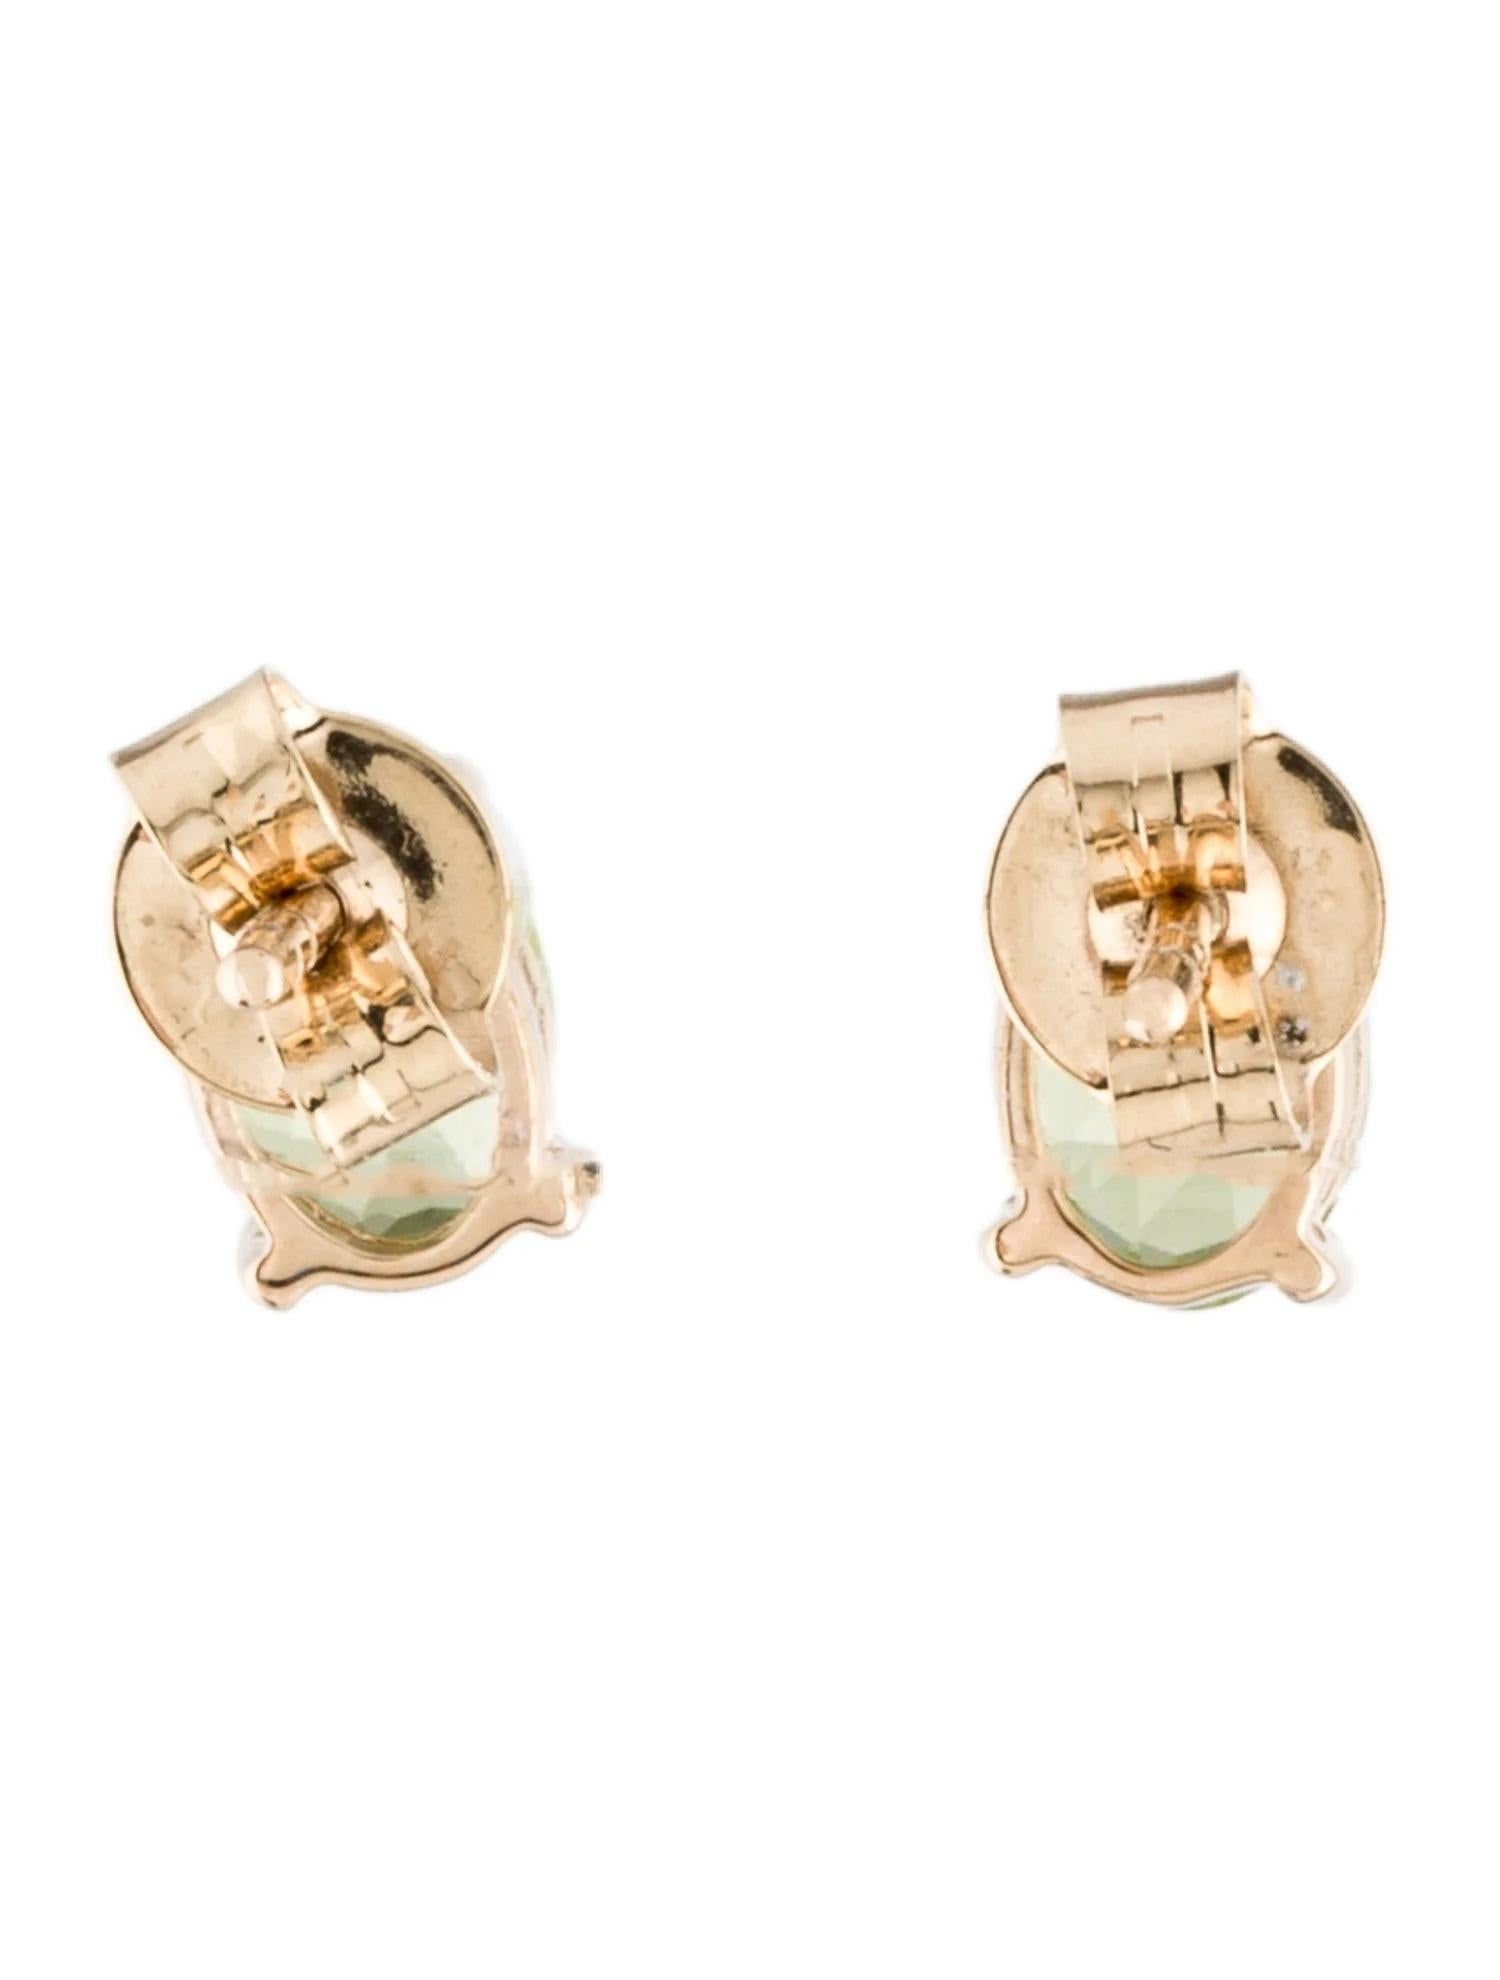 Oval Cut 14K Peridot Stud Earrings - Genuine Gemstone Jewelry, Timeless Style For Sale